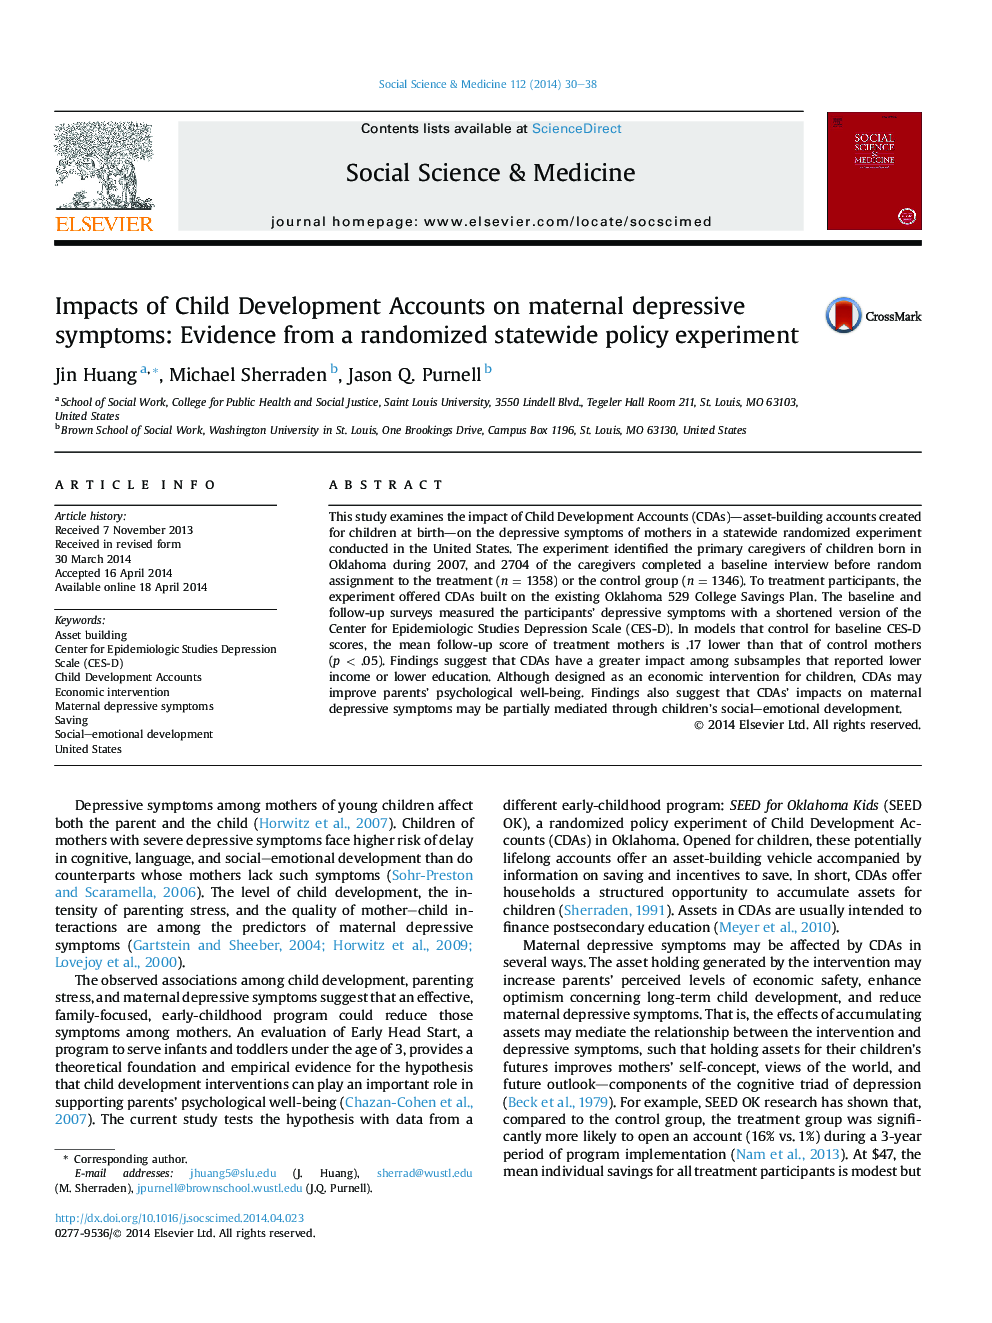 تأثیرات حساب های توسعه کودک بر علائم افسردگی مادران: شواهد از یک آزمایش تصادفی در سیاست های دولتی 